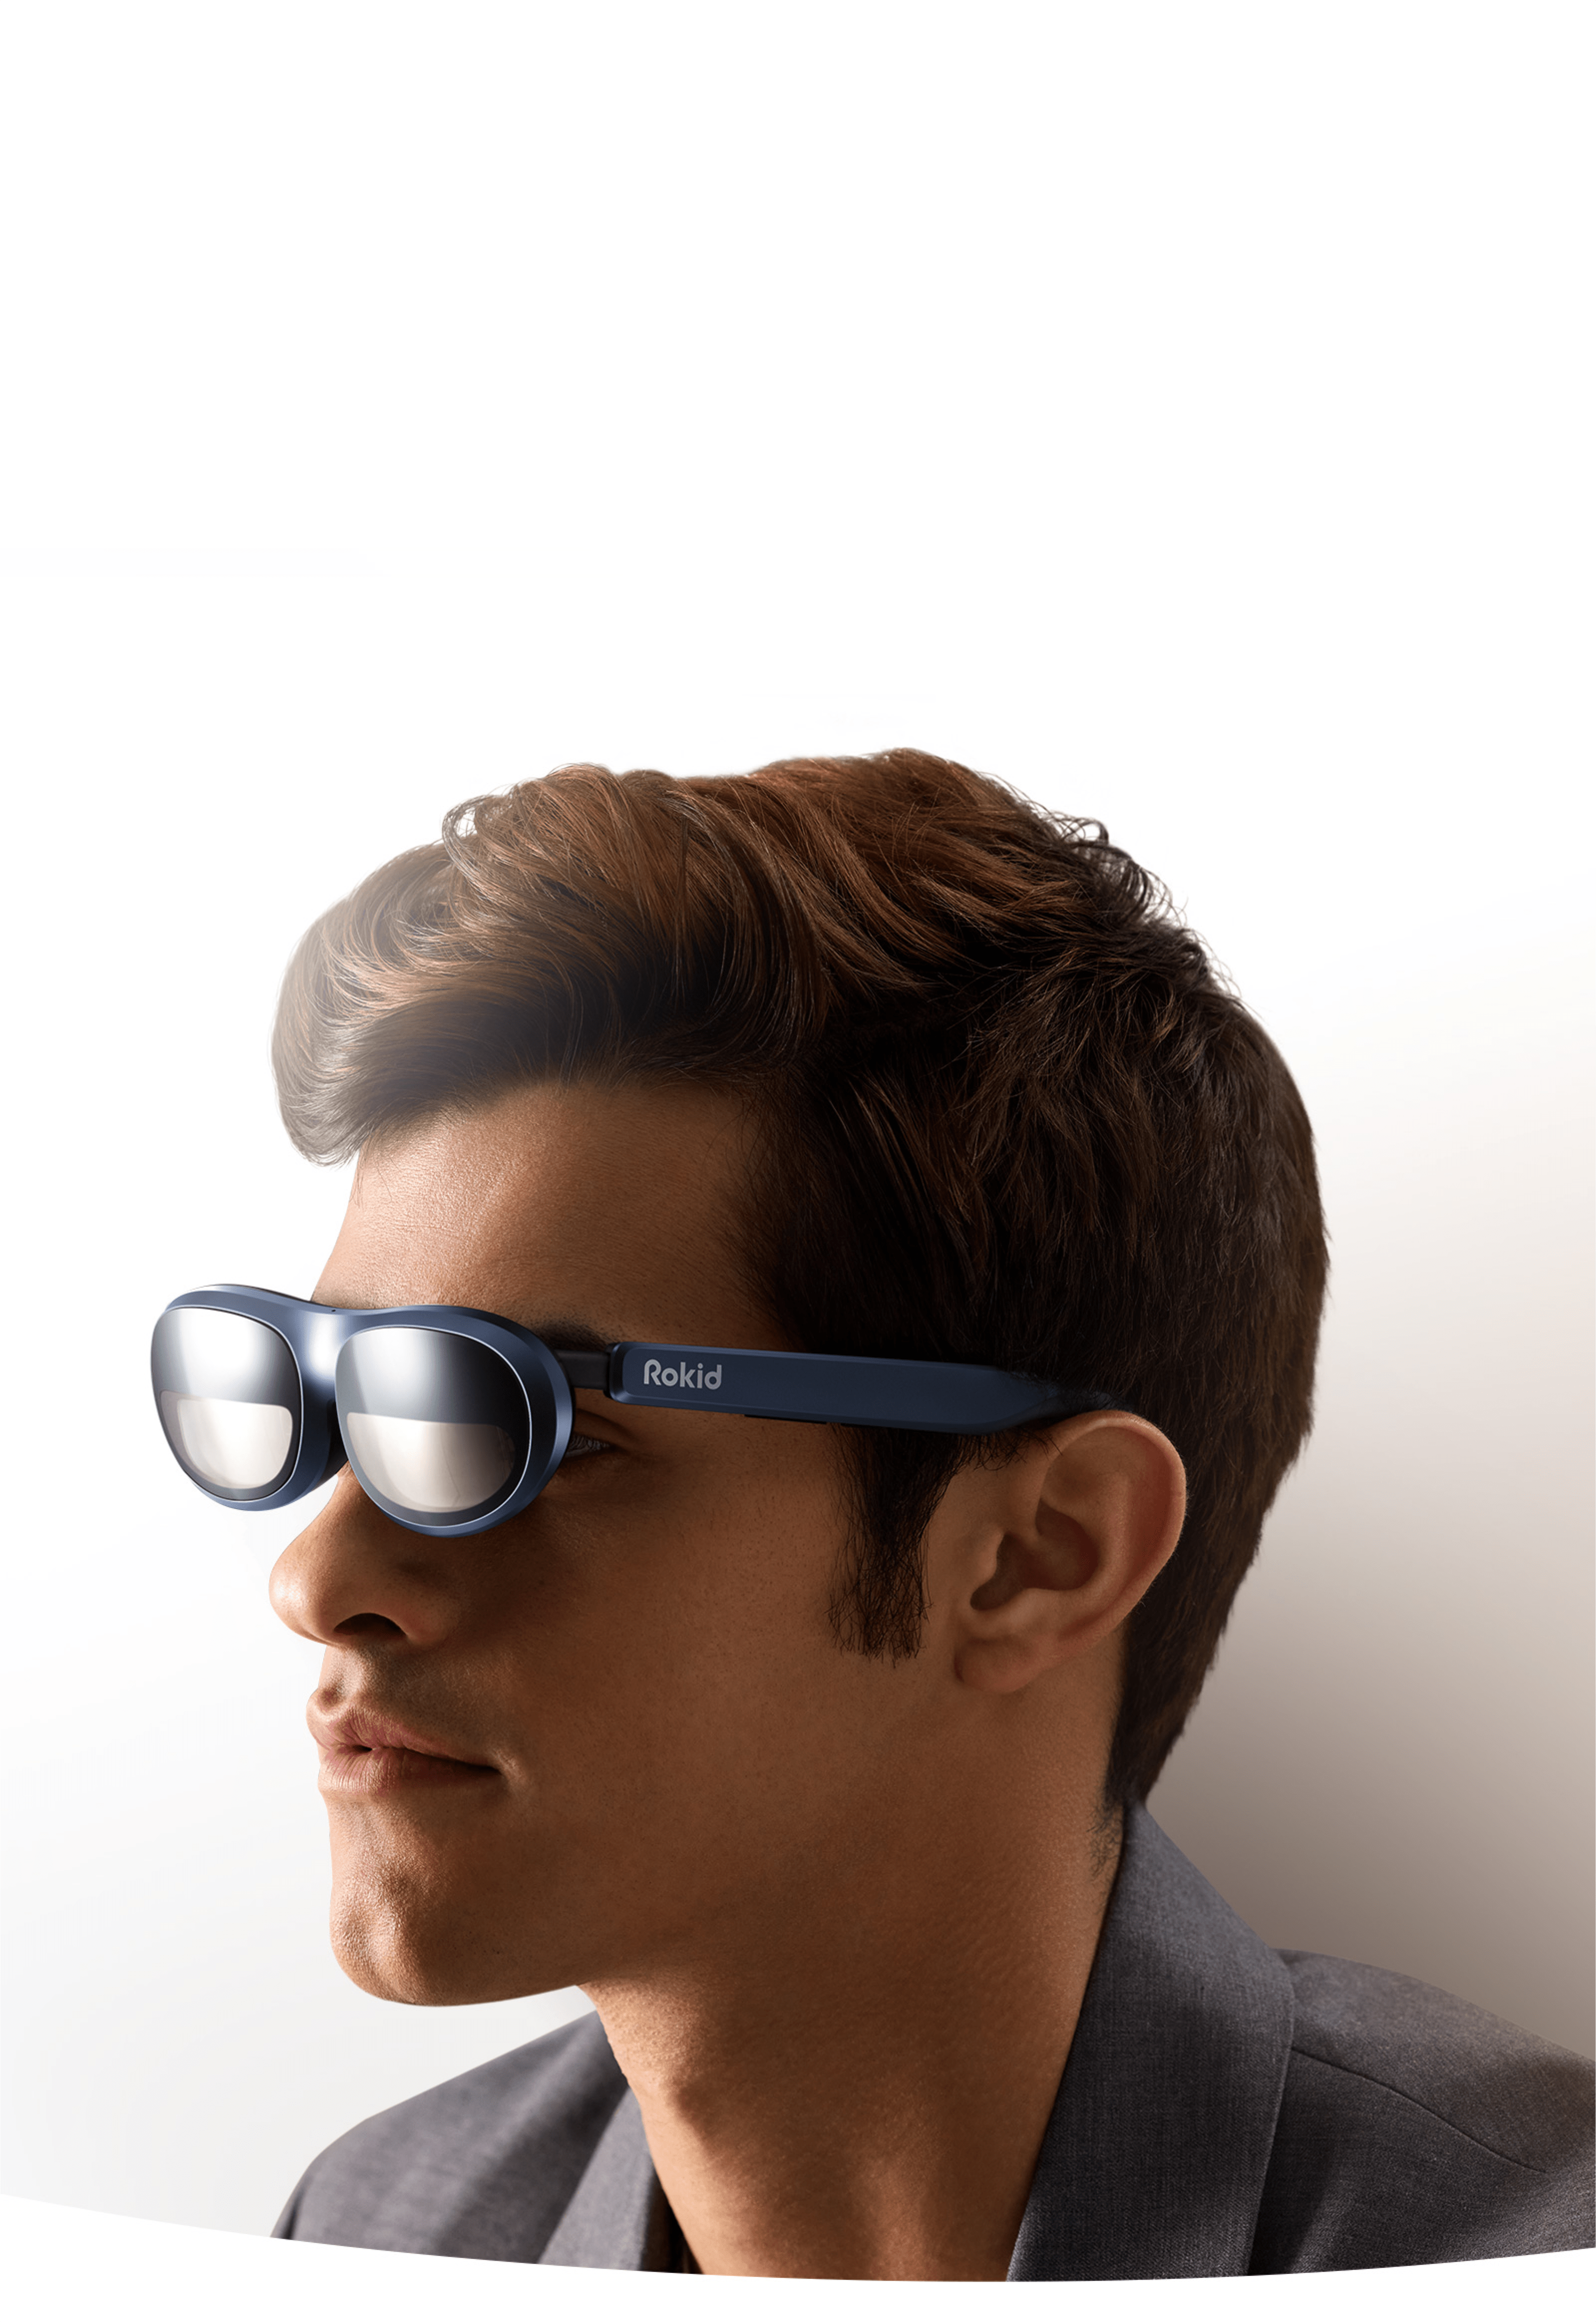 Un homme portant des lunettes de réalité augmentée rokid max